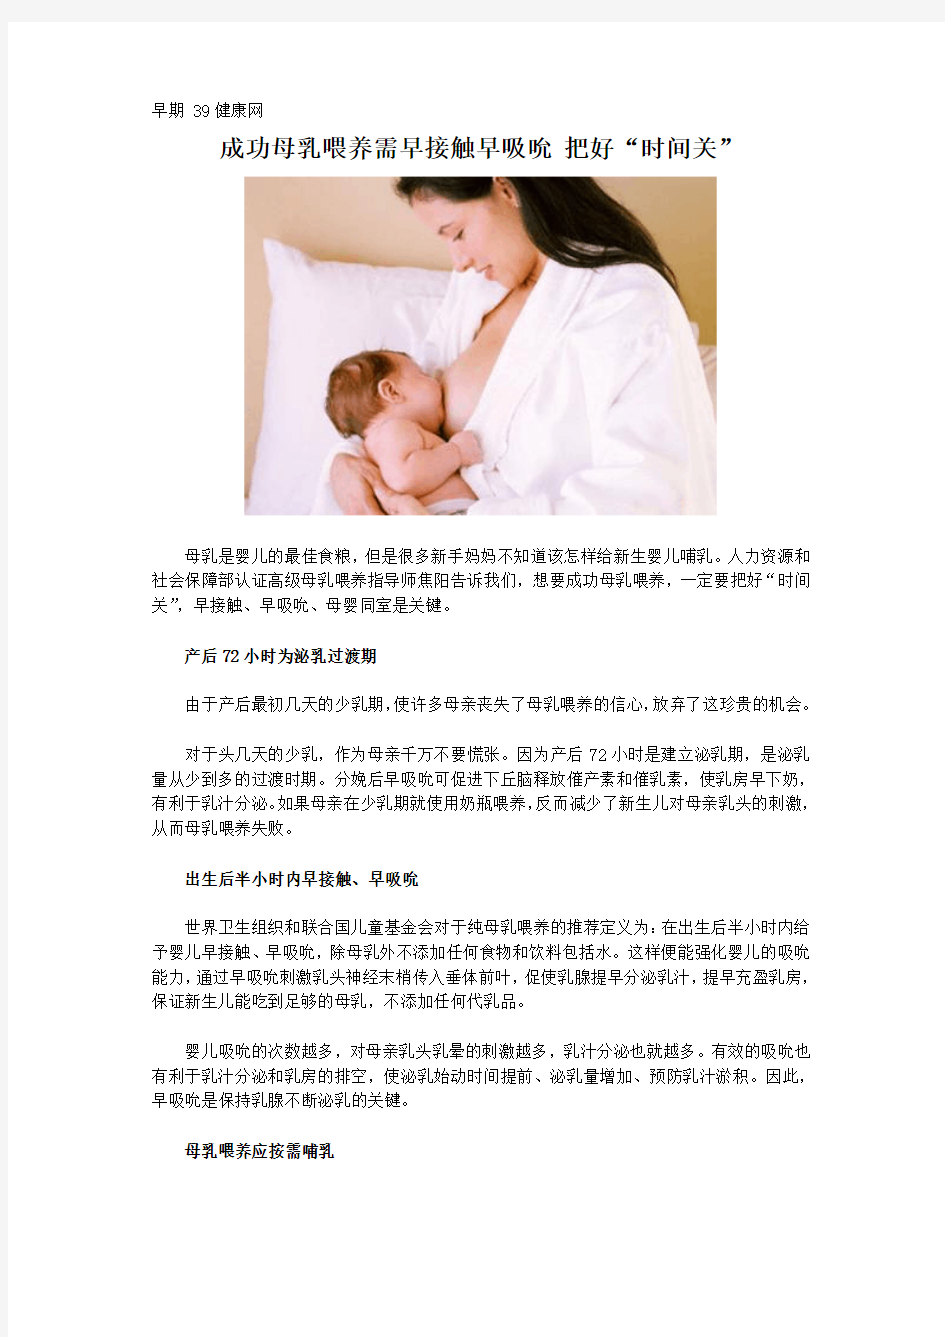 【山东省网上家长学校】成功母乳喂养需早接触早吸吮 把好“时间关”